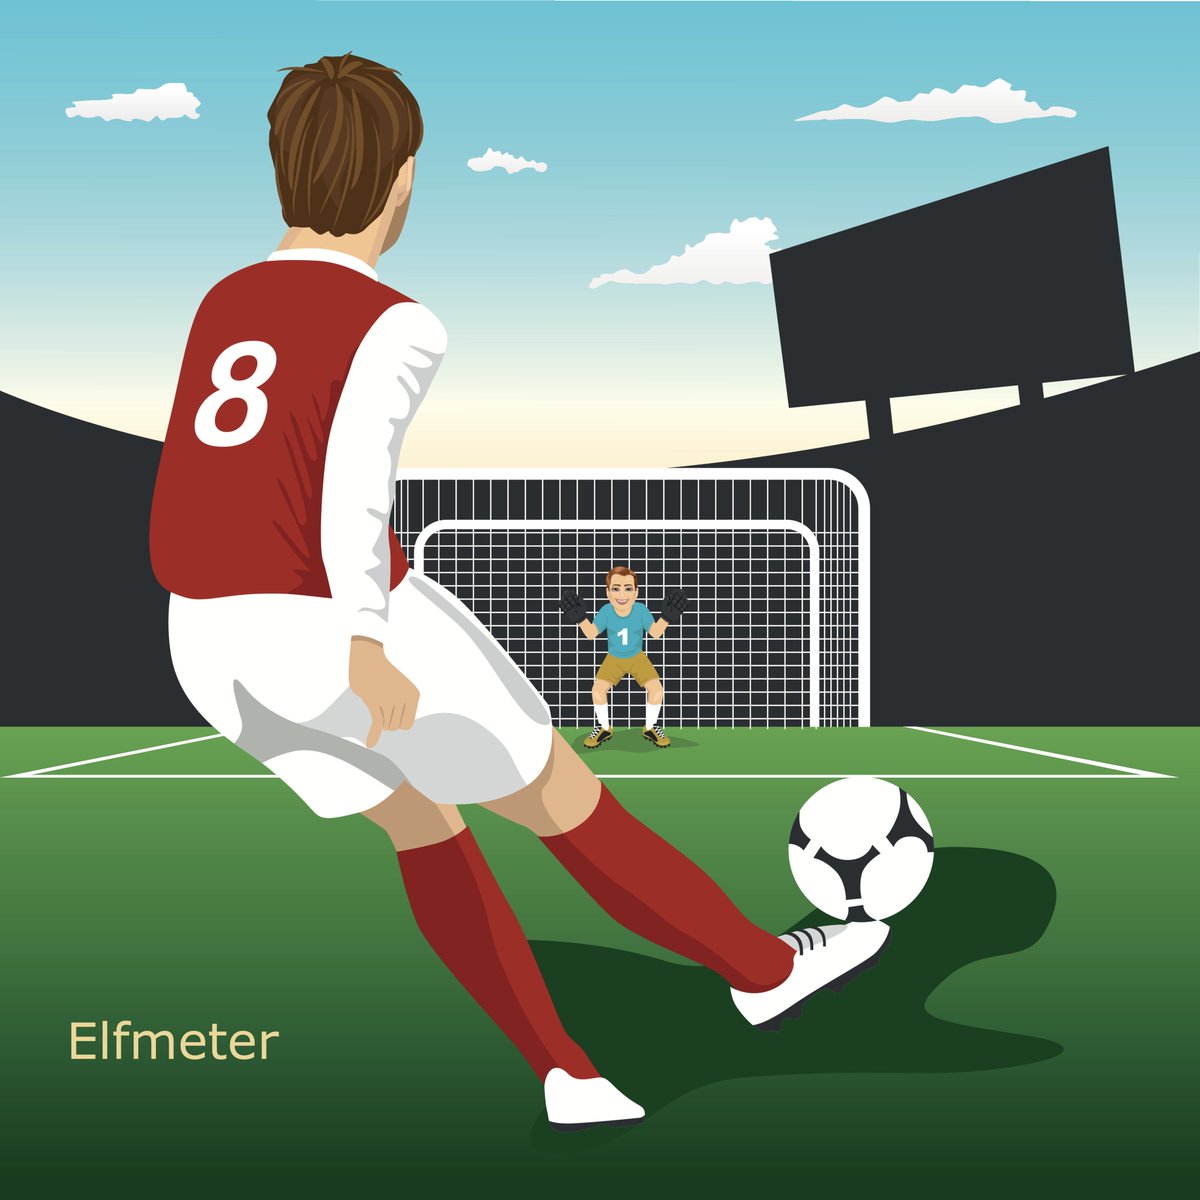 ドイツ大使館 サッカードイツ語 Elfmeter 直訳 11メートル ペナルティキック Pk のこと Pkはゴールラインから11ｍの距離から蹴られるため エルフメーター キラー といえば 文字通りpkをよく止めるgkのこと